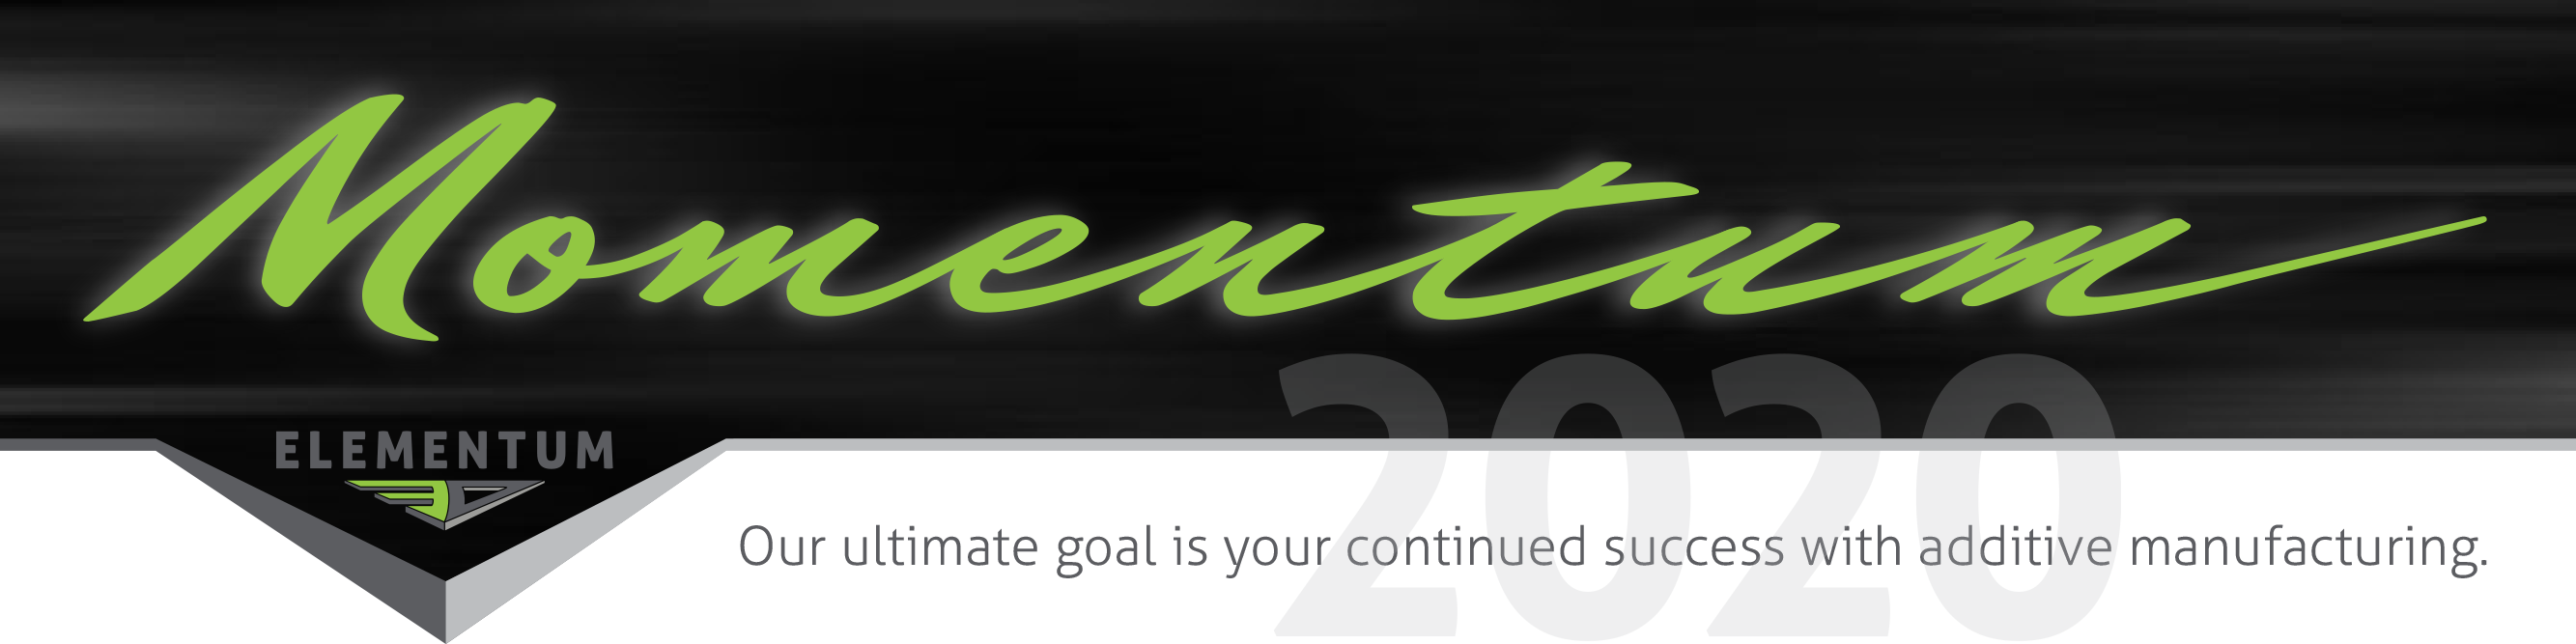 2020 Momentum Newsletter